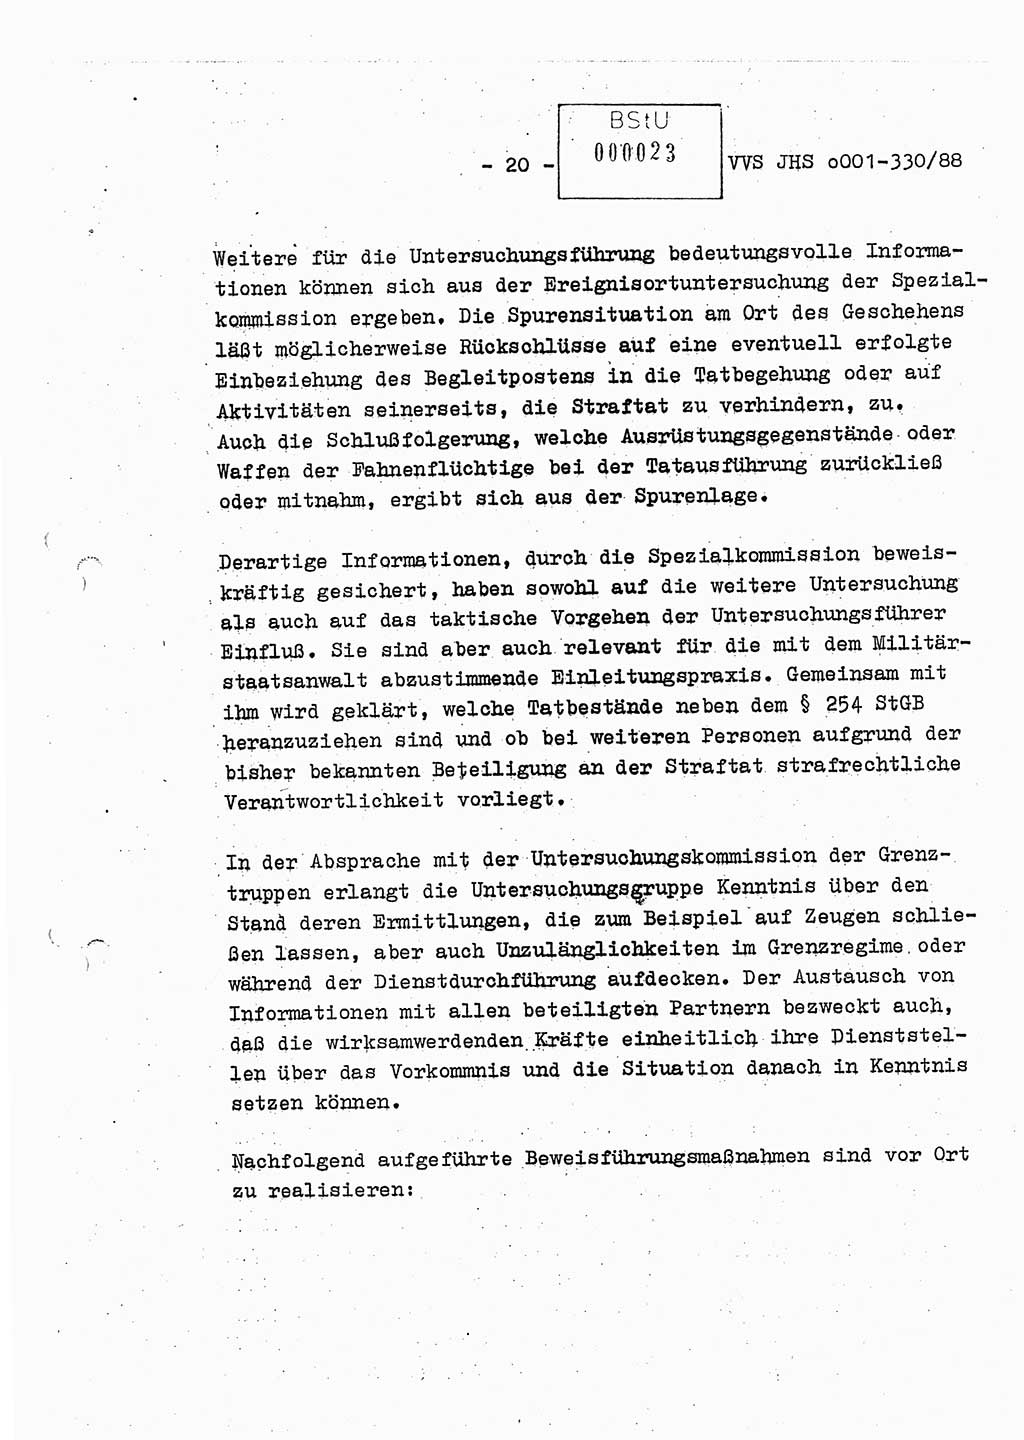 Diplomarbeit Offiziersschüler Thomas Mühle (HA Ⅸ/6), Ministerium für Staatssicherheit (MfS) [Deutsche Demokratische Republik (DDR)], Juristische Hochschule (JHS), Vertrauliche Verschlußsache (VVS) o001-330/88, Potsdam 1988, Seite 20 (Dipl.-Arb. MfS DDR JHS VVS o001-330/88 1988, S. 20)